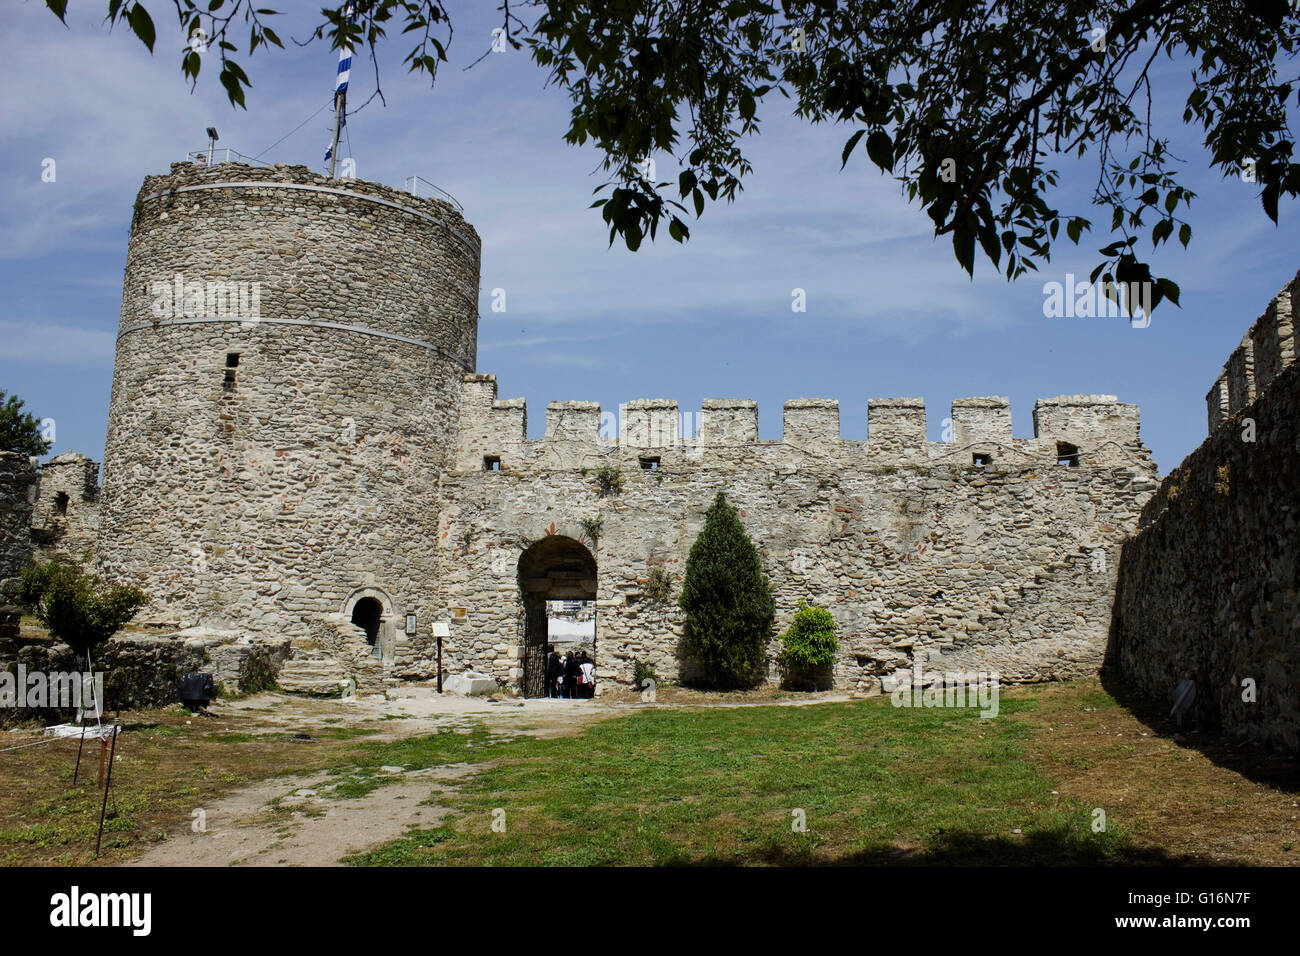 Kavalas zentrale kreisförmige Turm der Zitadelle mit Zinnen und Gehwege. Griechenland. Stockfoto